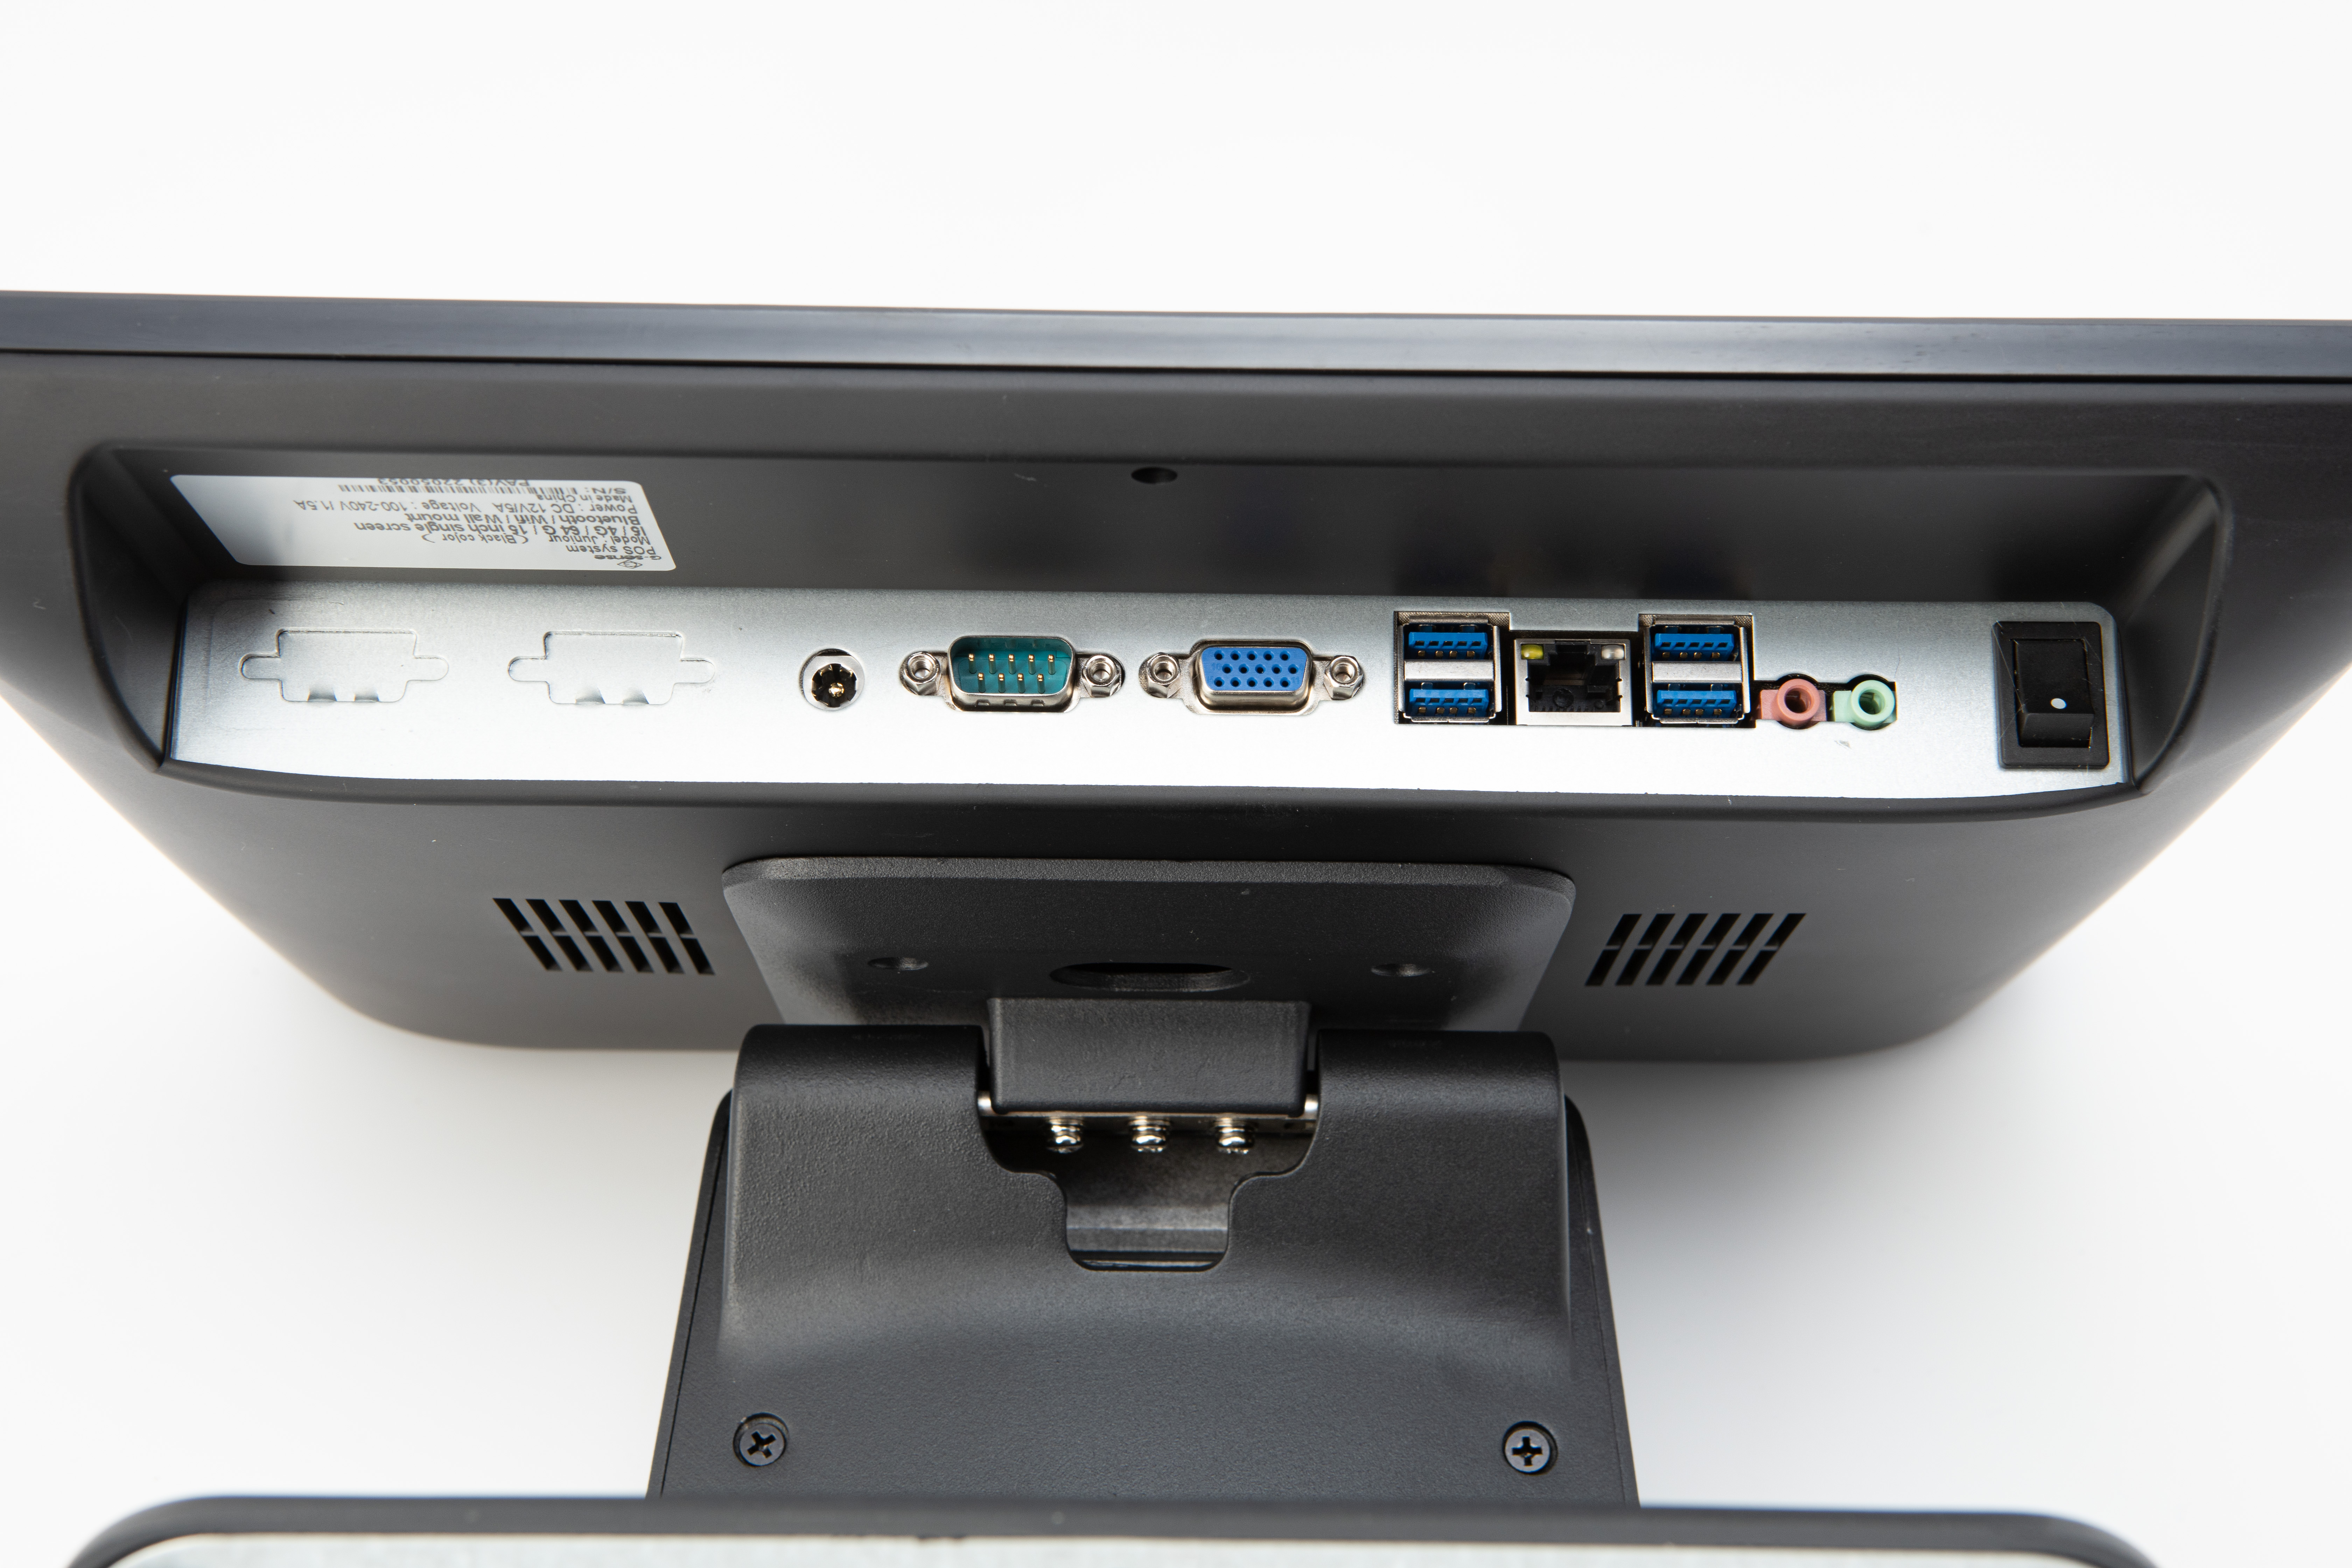 Сенсорный терминал G-SENSE Juniour, черный (15", Core i5, 4 Gb, SSD 64 Gb, без MSR, без ОС, wall mount, BT+WiFi) купить в ККМ.ЦЕНТР